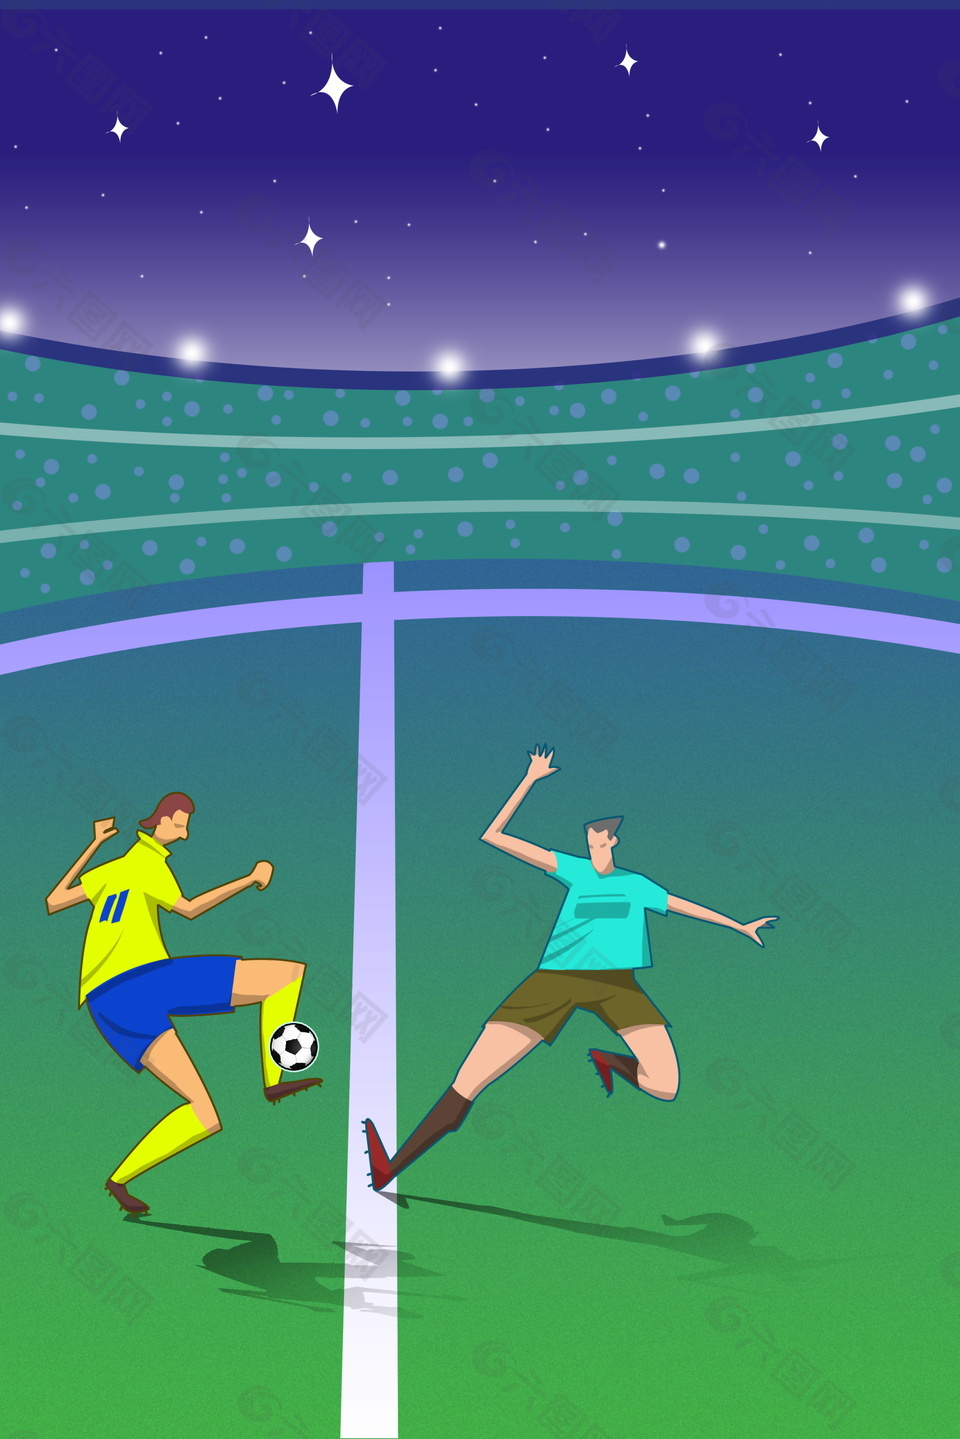 卡通星光下的足球比赛广告比较素材